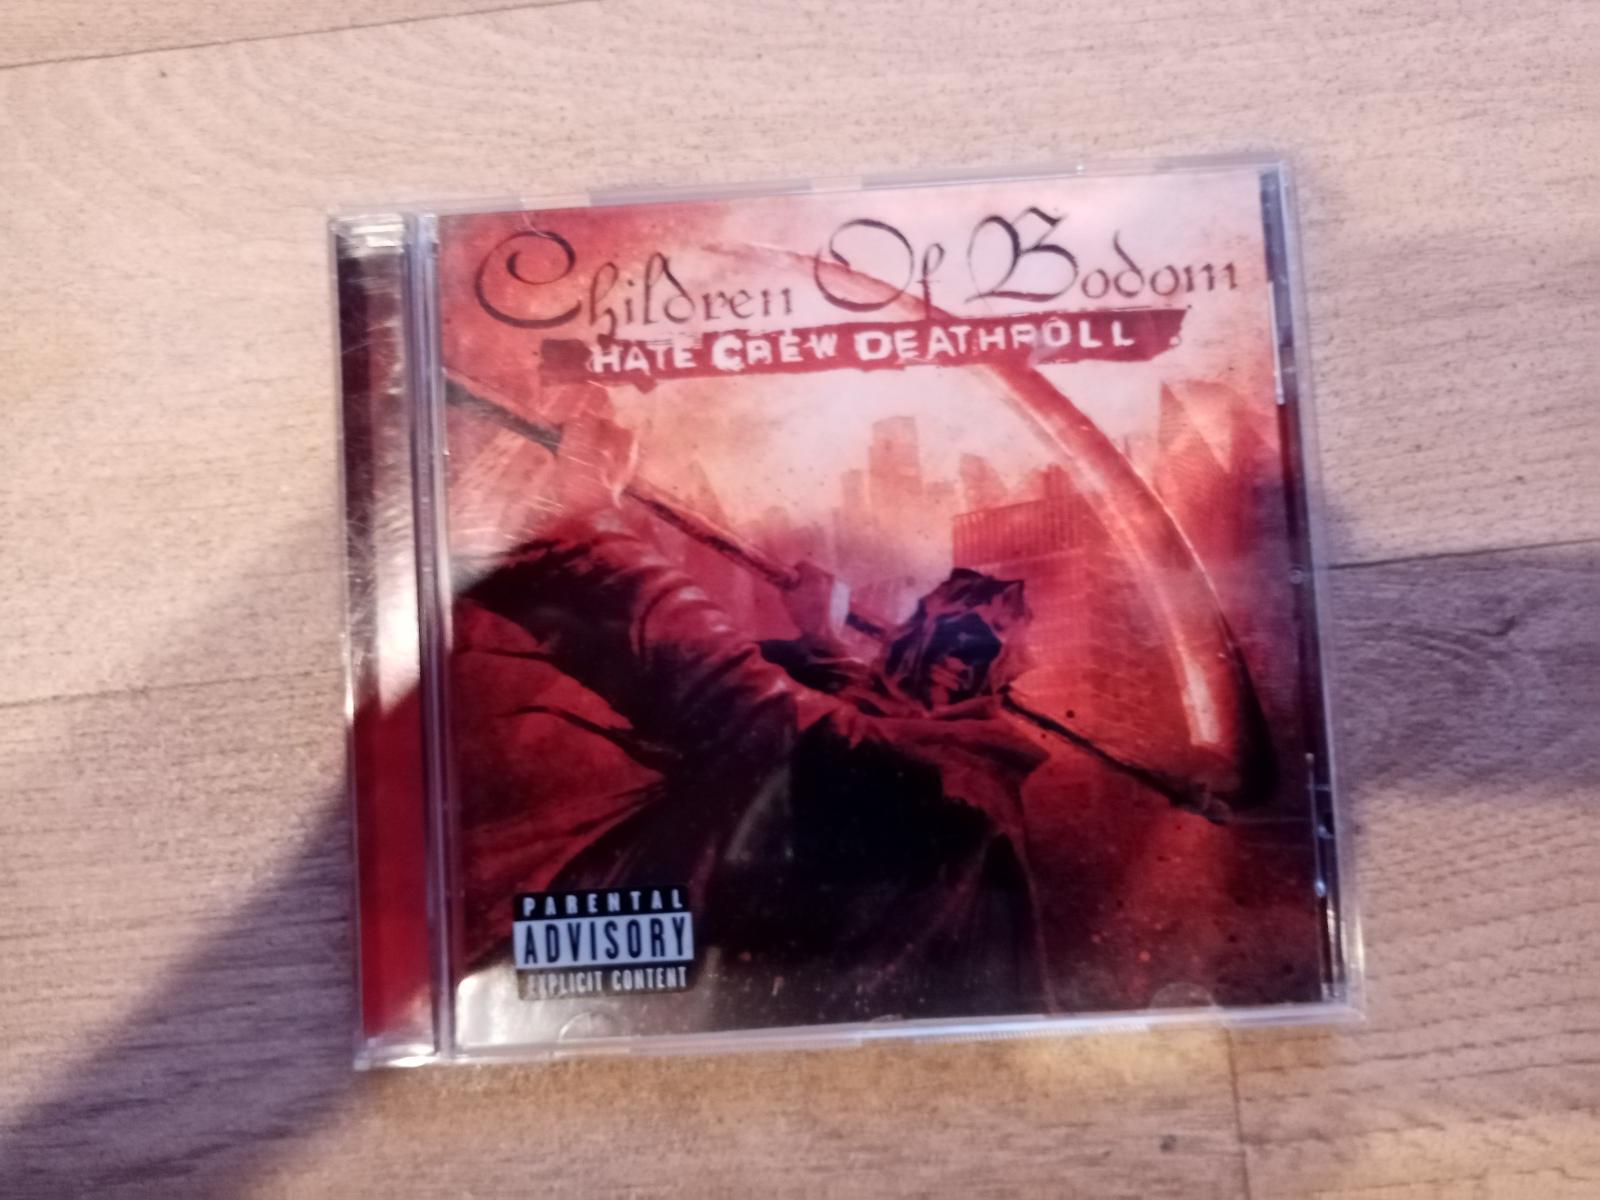 CD Children of Bodom - Hate Crew Deatroll - Hudba na CD